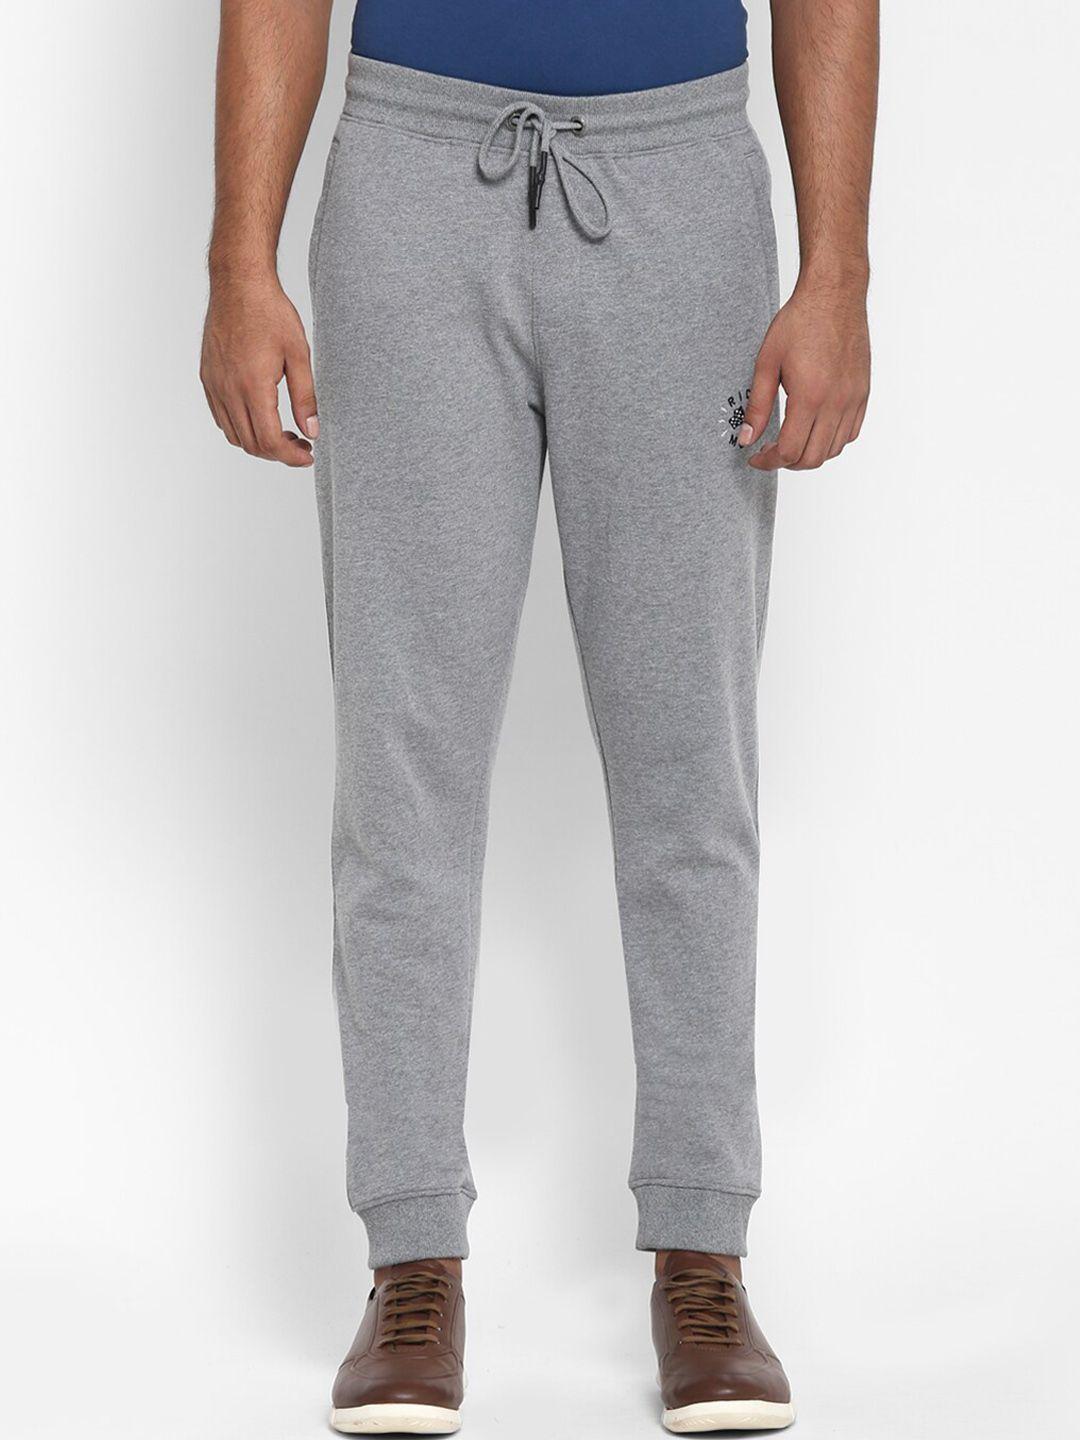 royal-enfield-men-grey-cotton-joggers-trousers